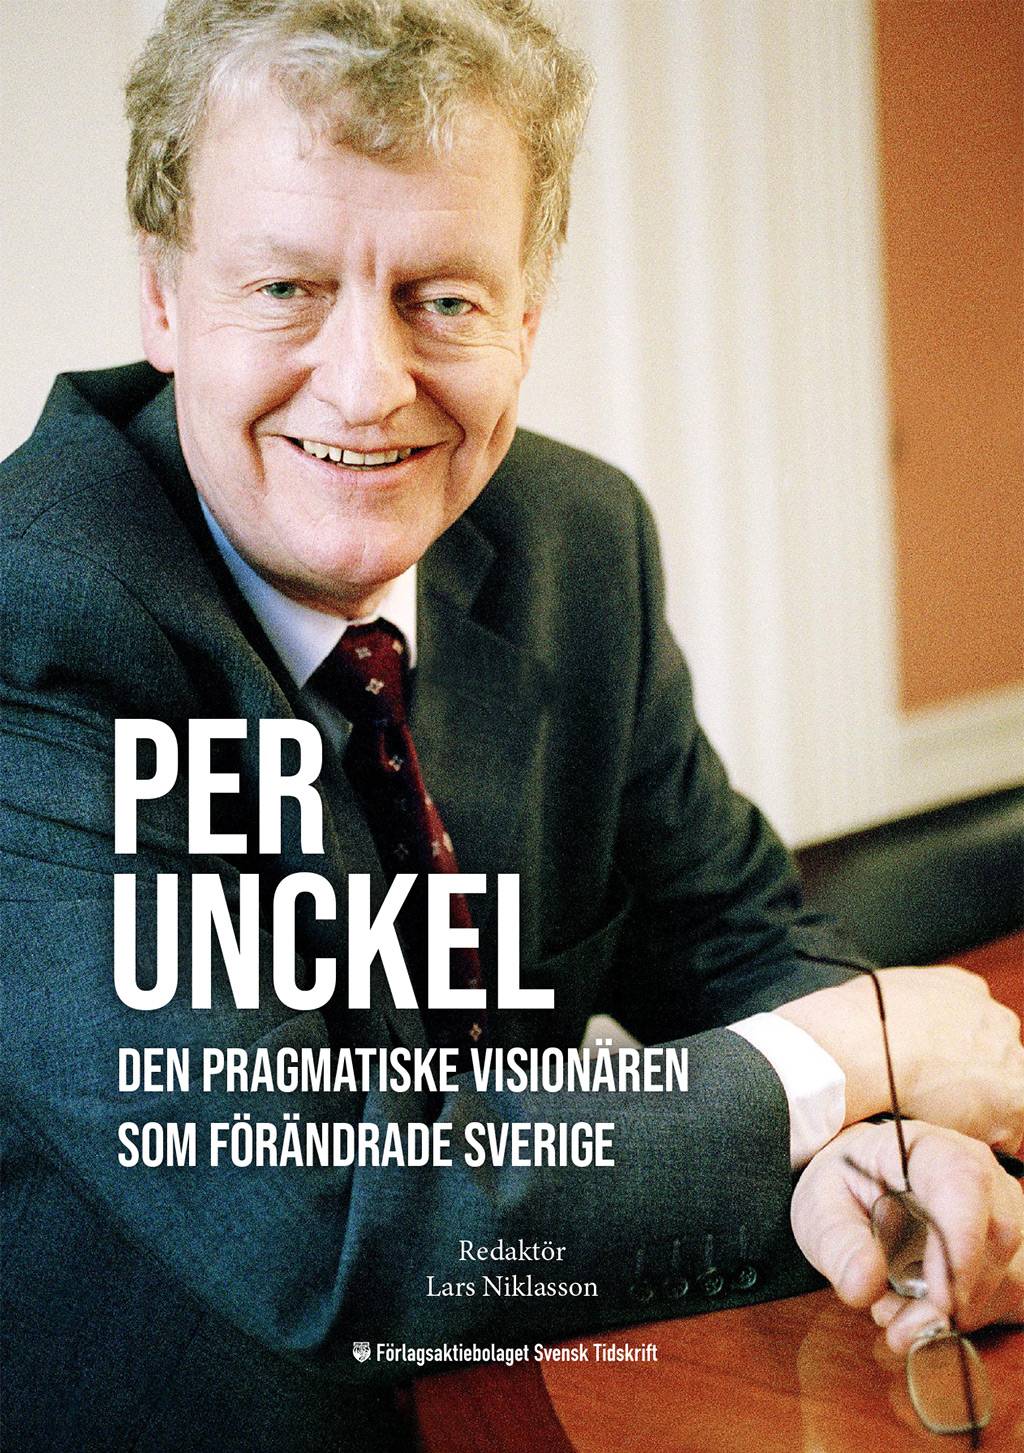 Per Unckel: Den pragmatiske visionären som förändrade Sverige